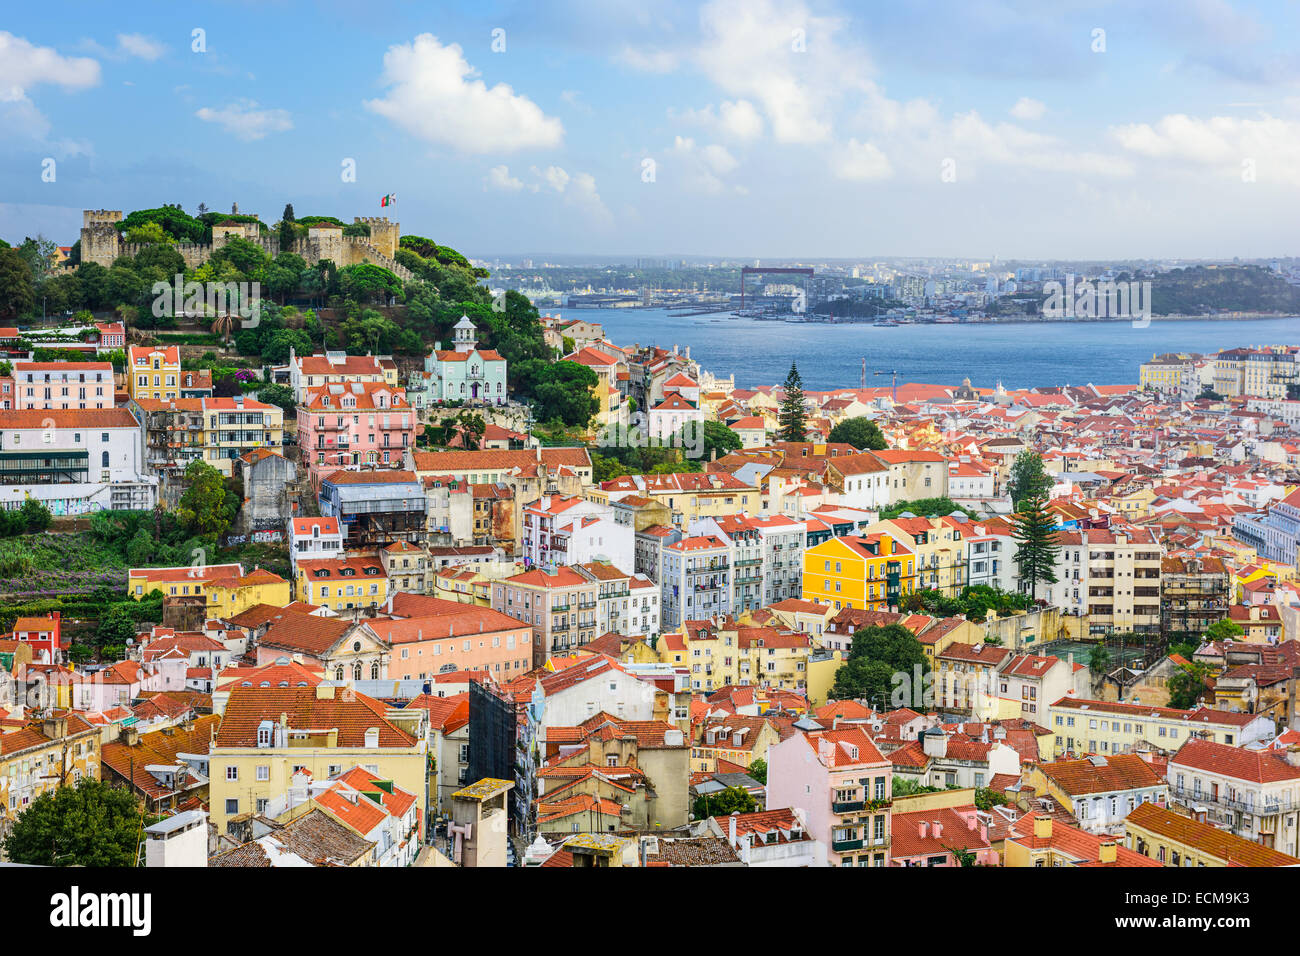 Lisbona, Portogallo skyline al castello Sao Jorge nel giorno. Foto Stock